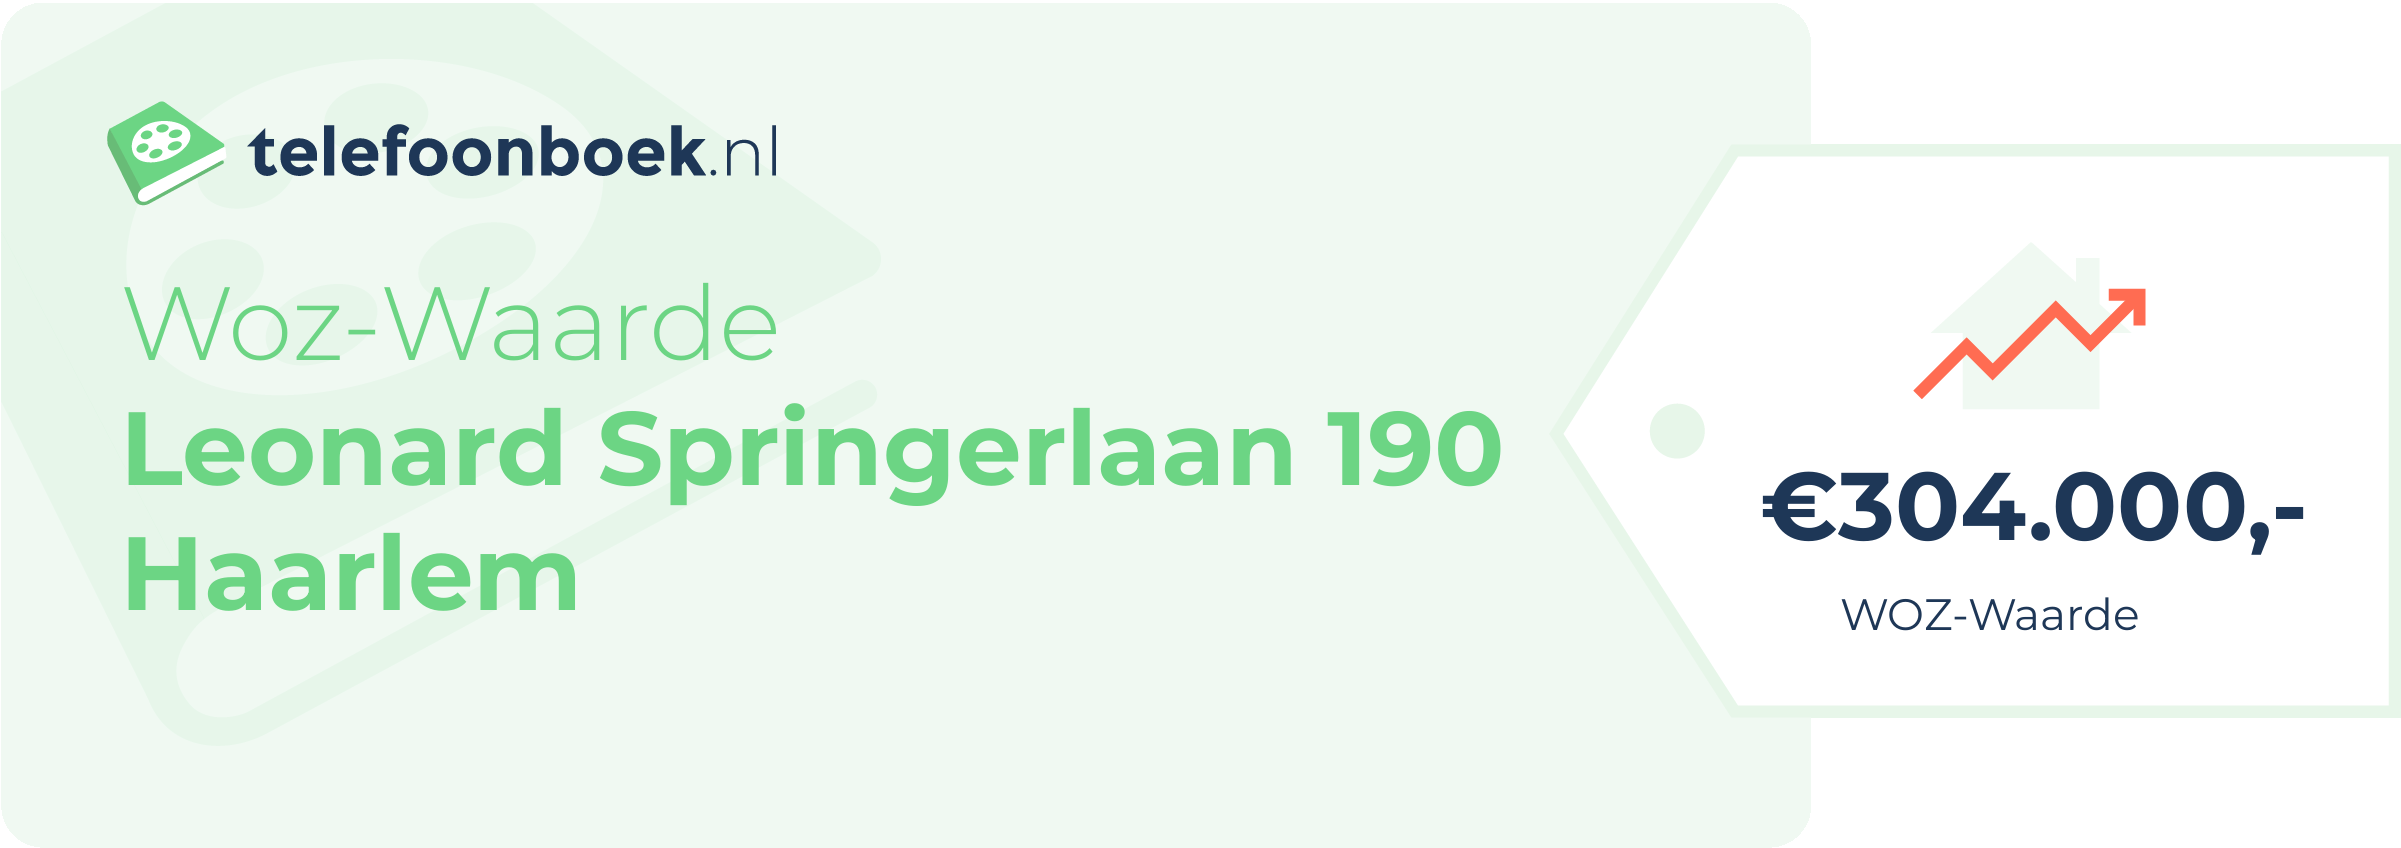 WOZ-waarde Leonard Springerlaan 190 Haarlem